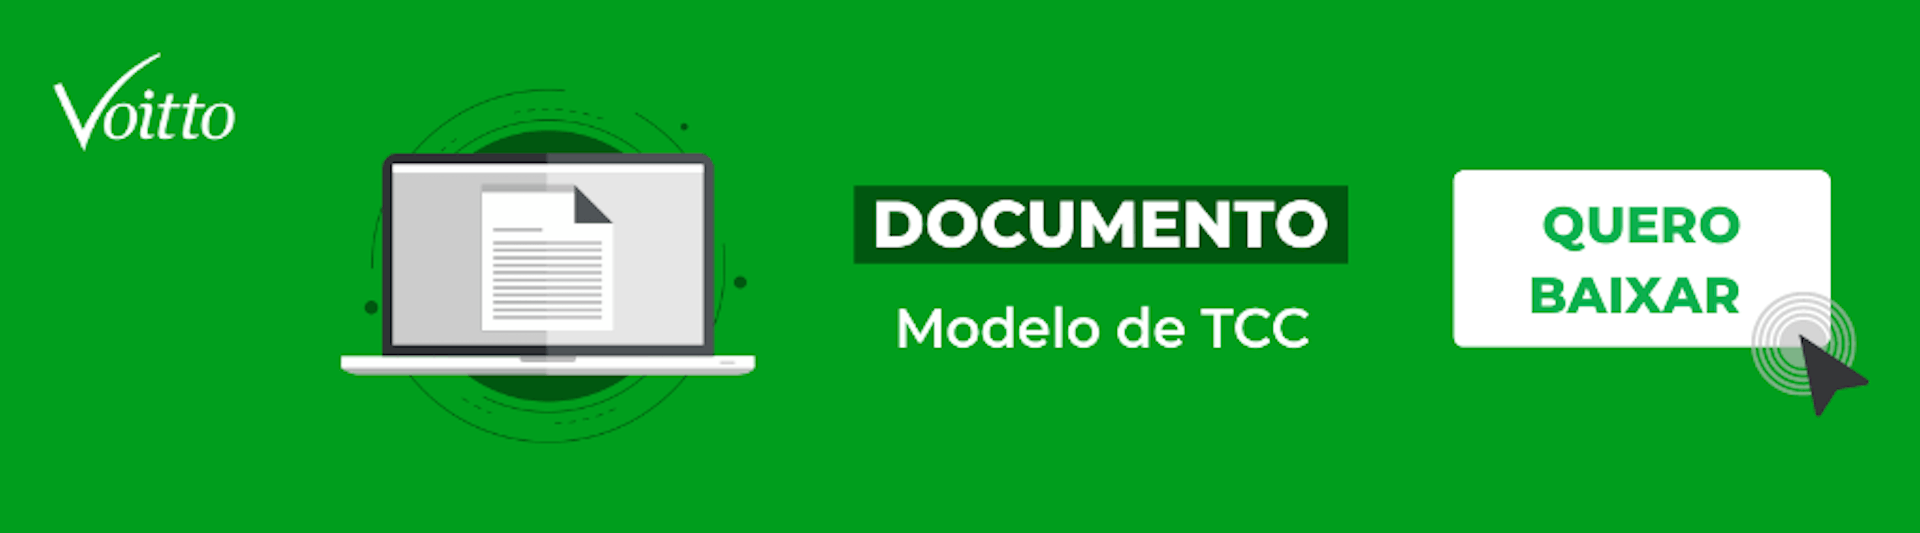 documento modelo de tcc